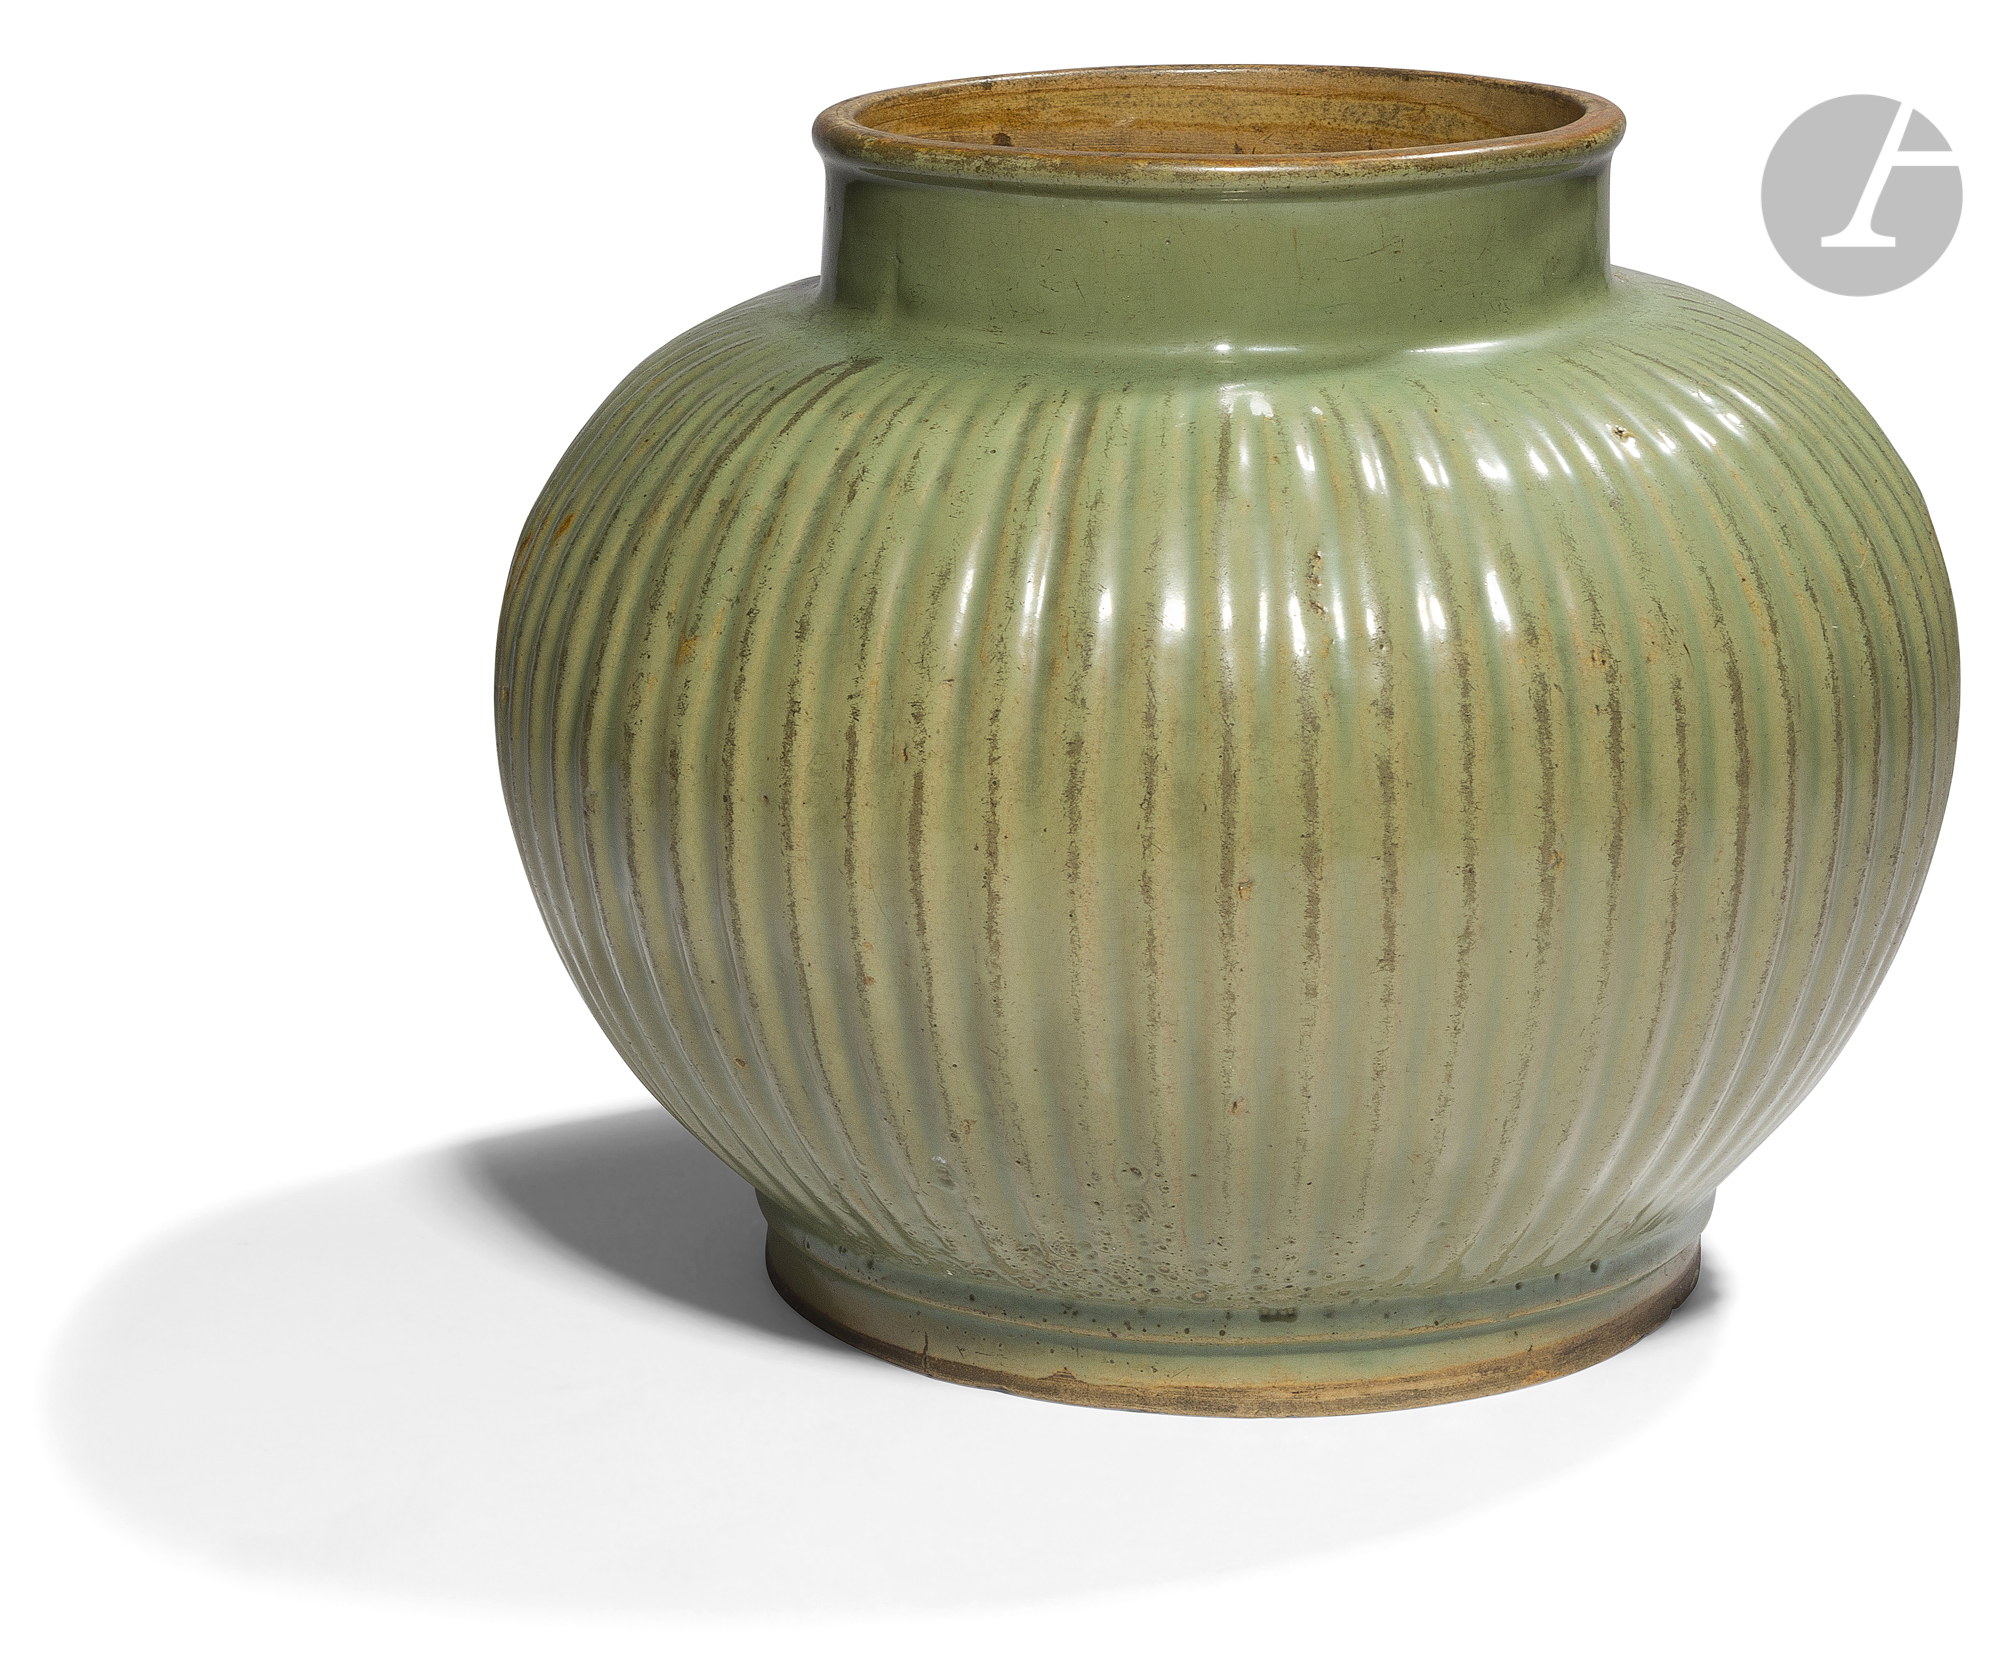 CHINE - XVIIIe siècle Pot en grès émaillé vert céladon pansu et côtelé. (Éclats en bordure de pied).